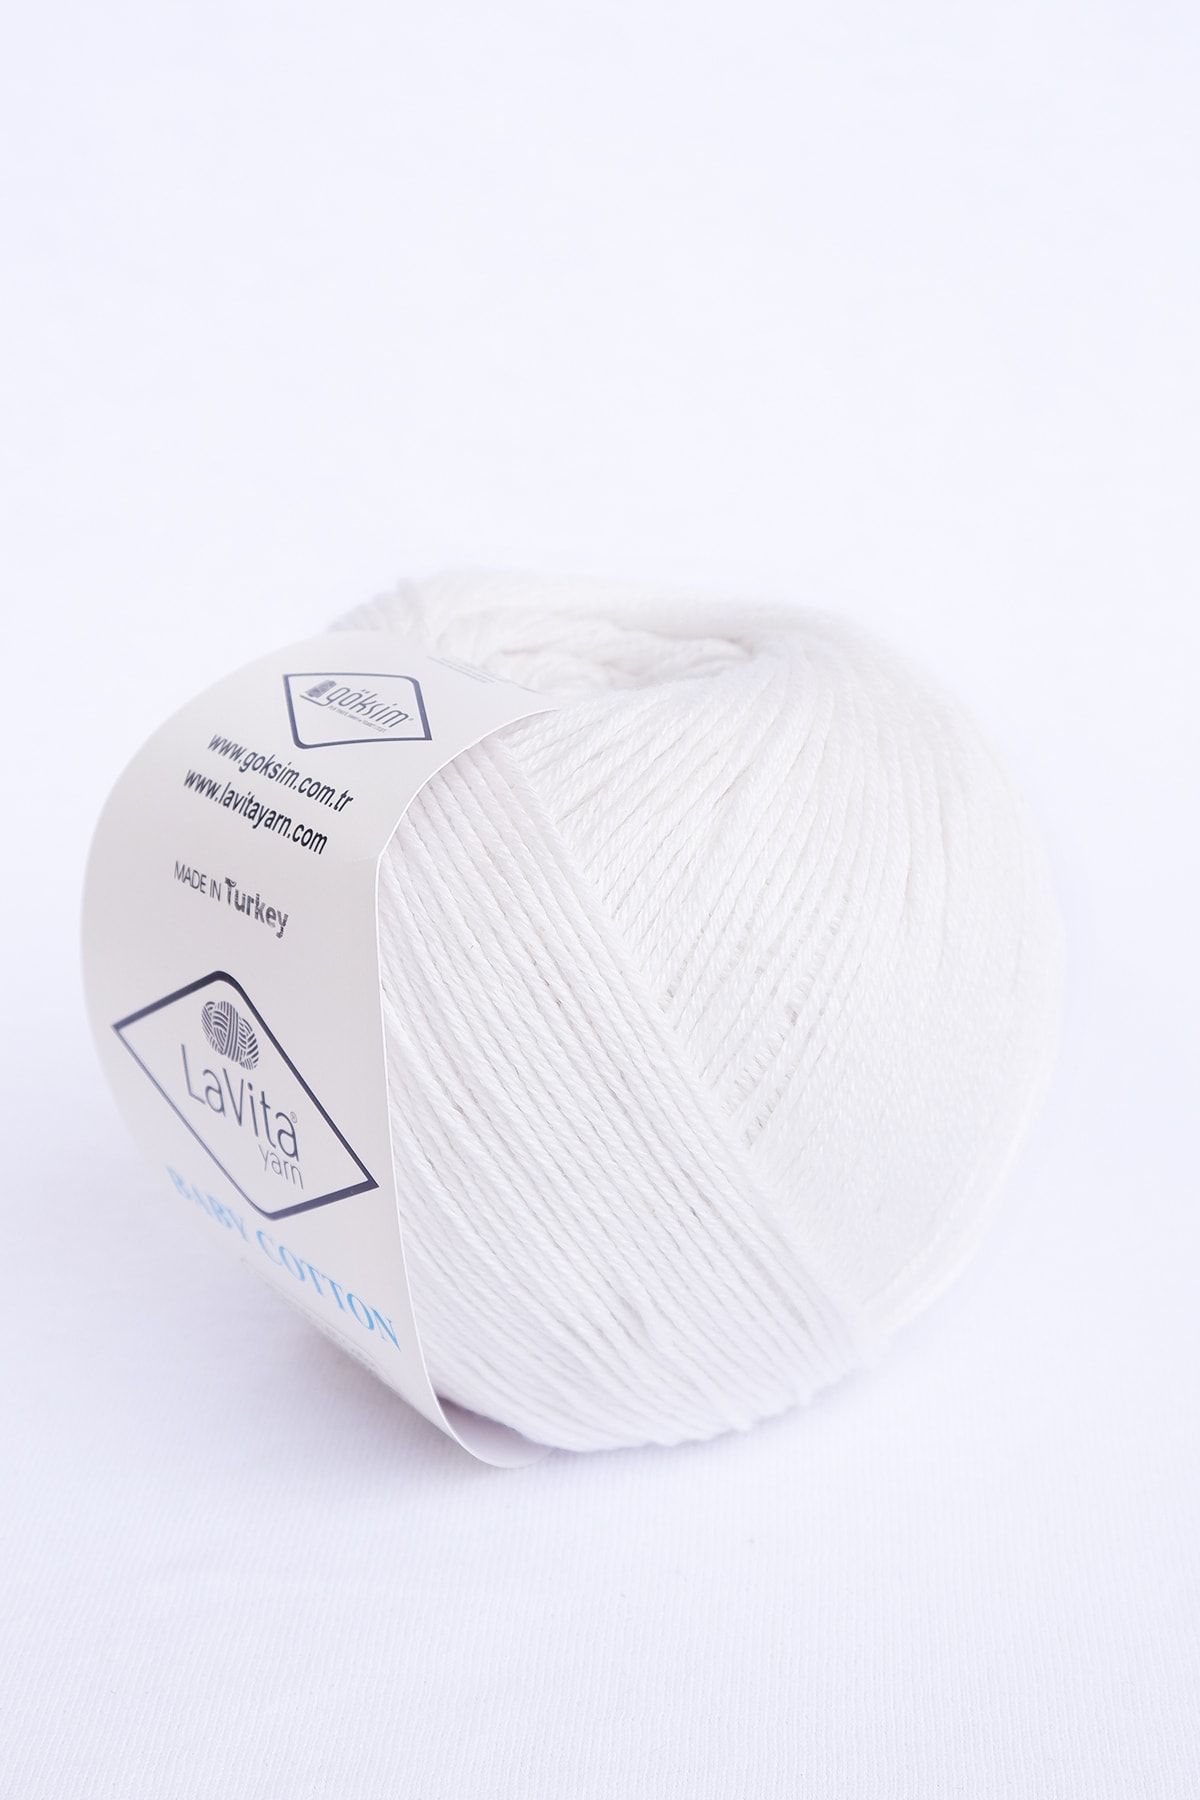 LaVita Yarn Baby Cotton 50 gr Amigurumi, Punch, El Örgü Ipligi, 5'li Paket Taka Yarn (BEYAZ-1001)